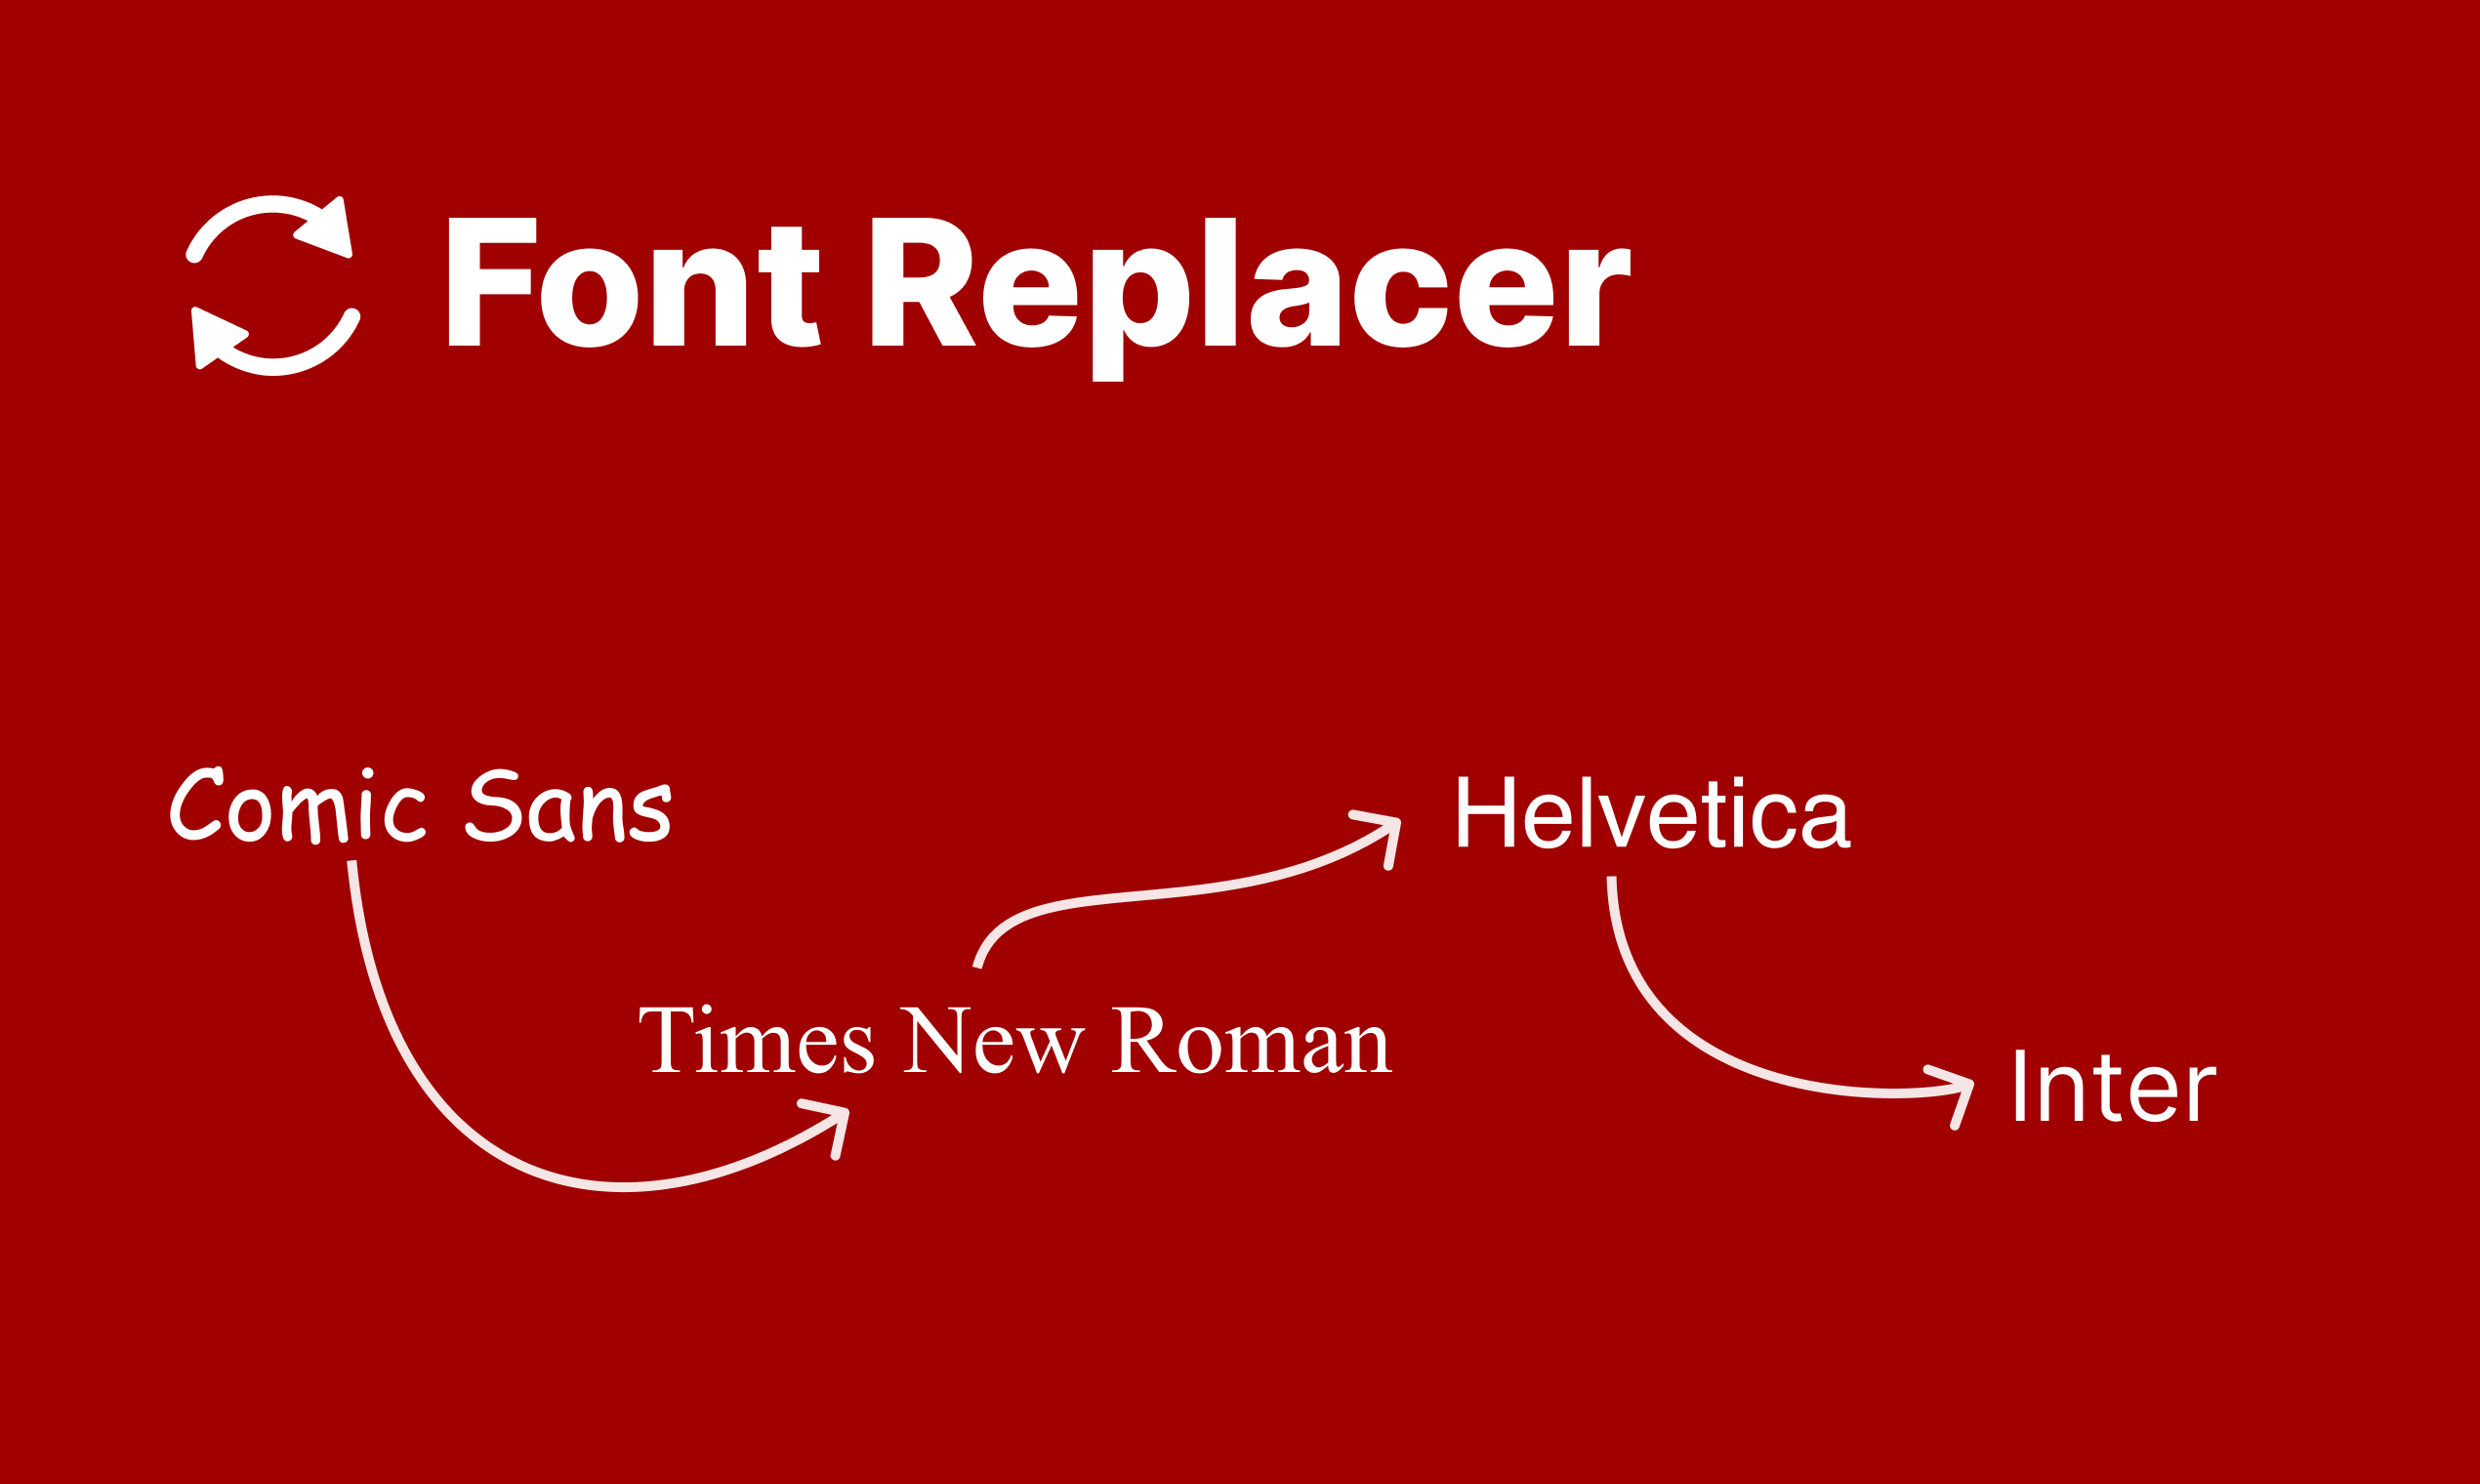 figma custom fonts